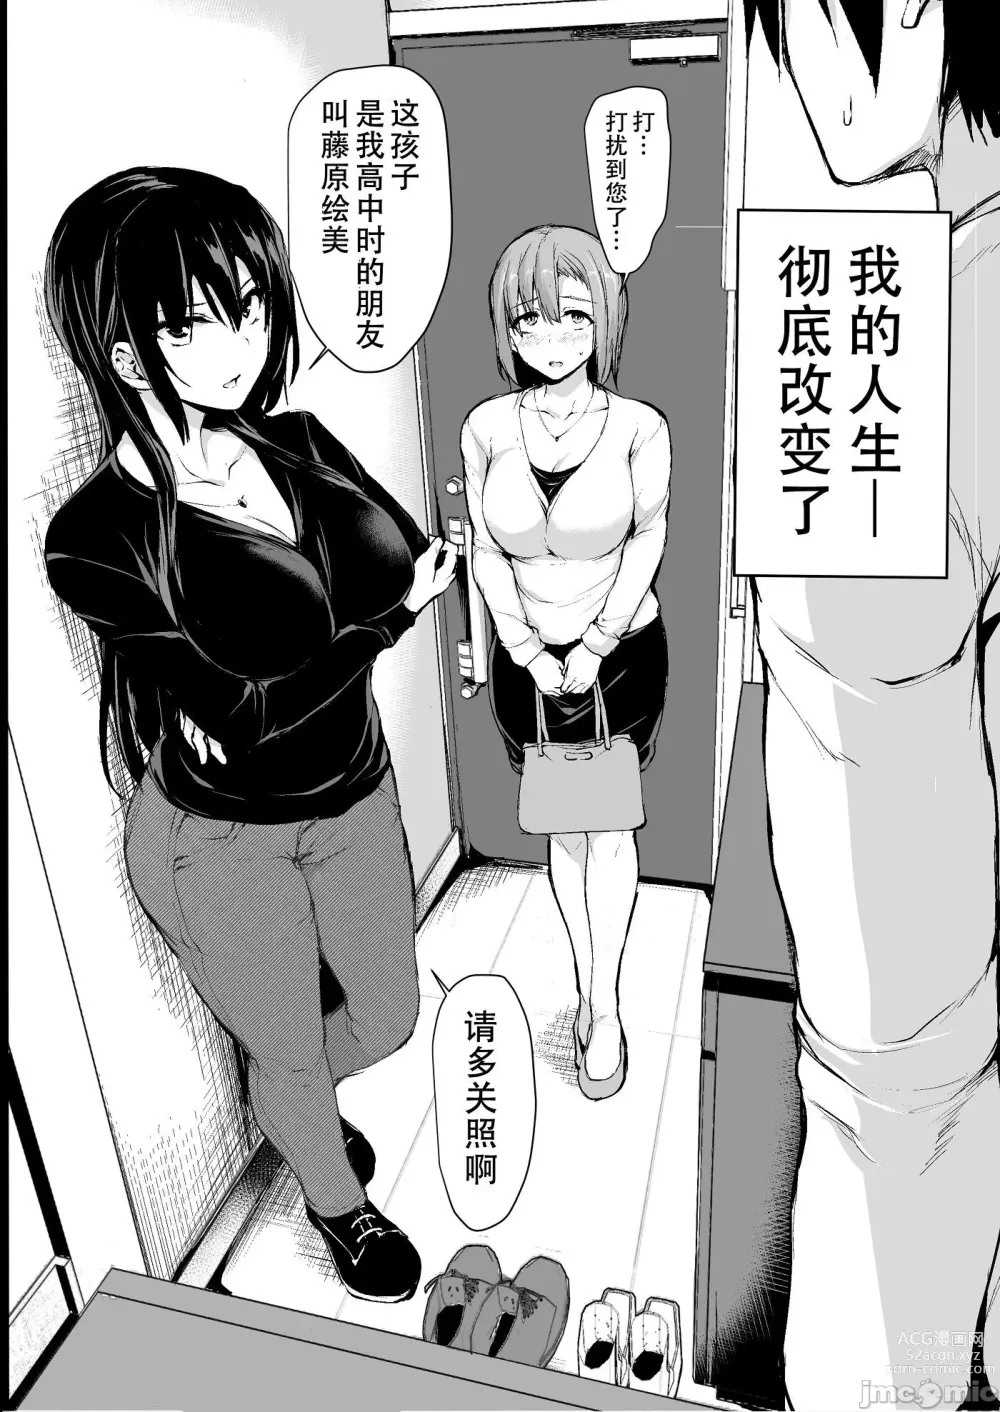 Page 3 of doujinshi 巨乳が2人いないと勃起しない夫のために友達を連れてきた妻